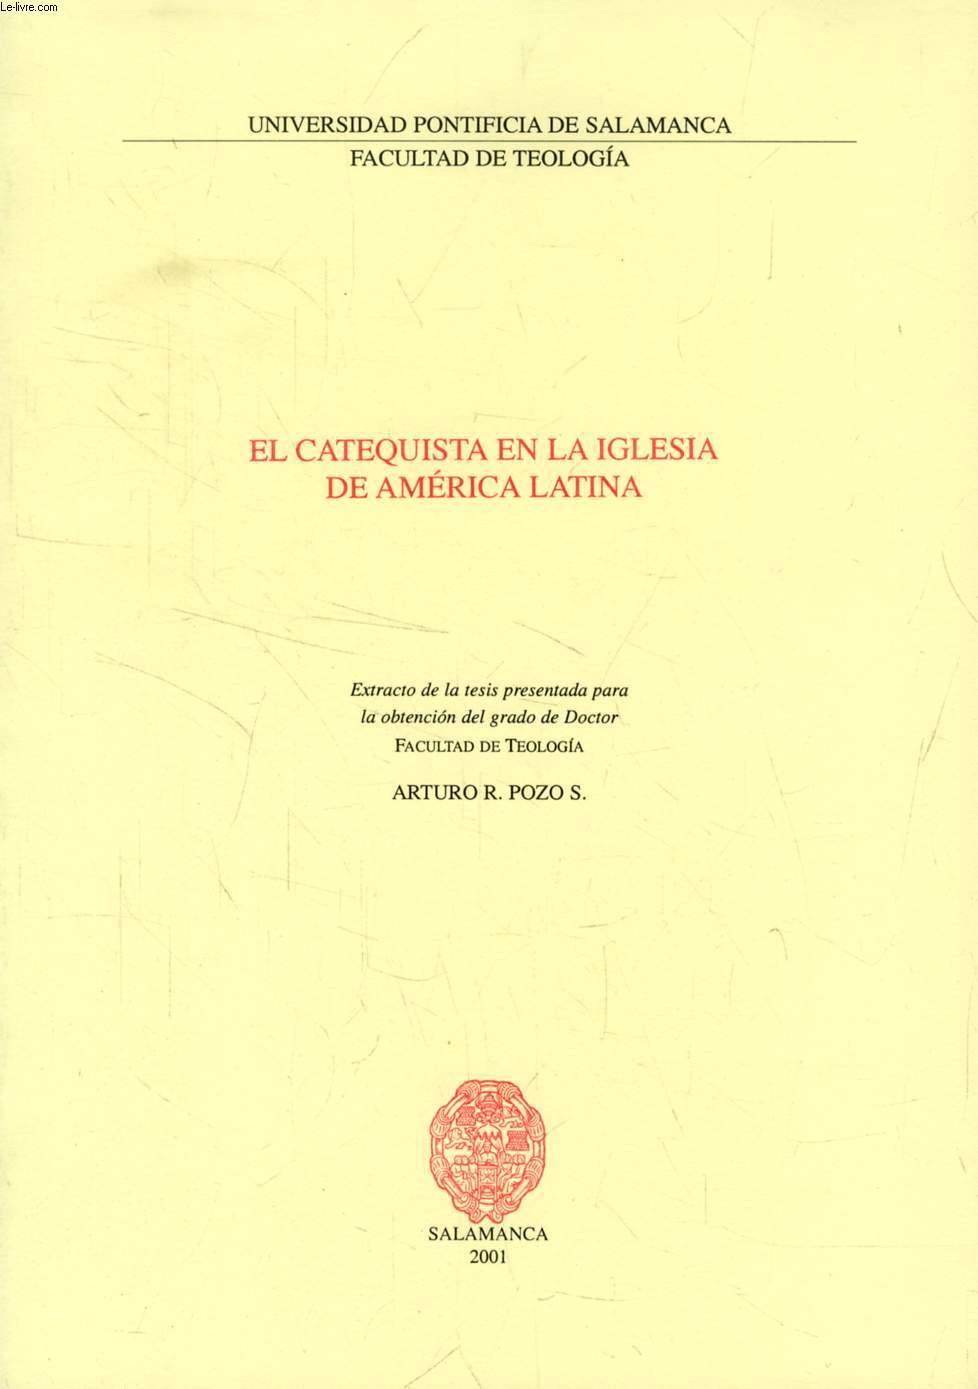 EL CATEQUISTA EN LA IGLESIA DE AMERICA LATINA (EXTRACTO DE LA TESIS)